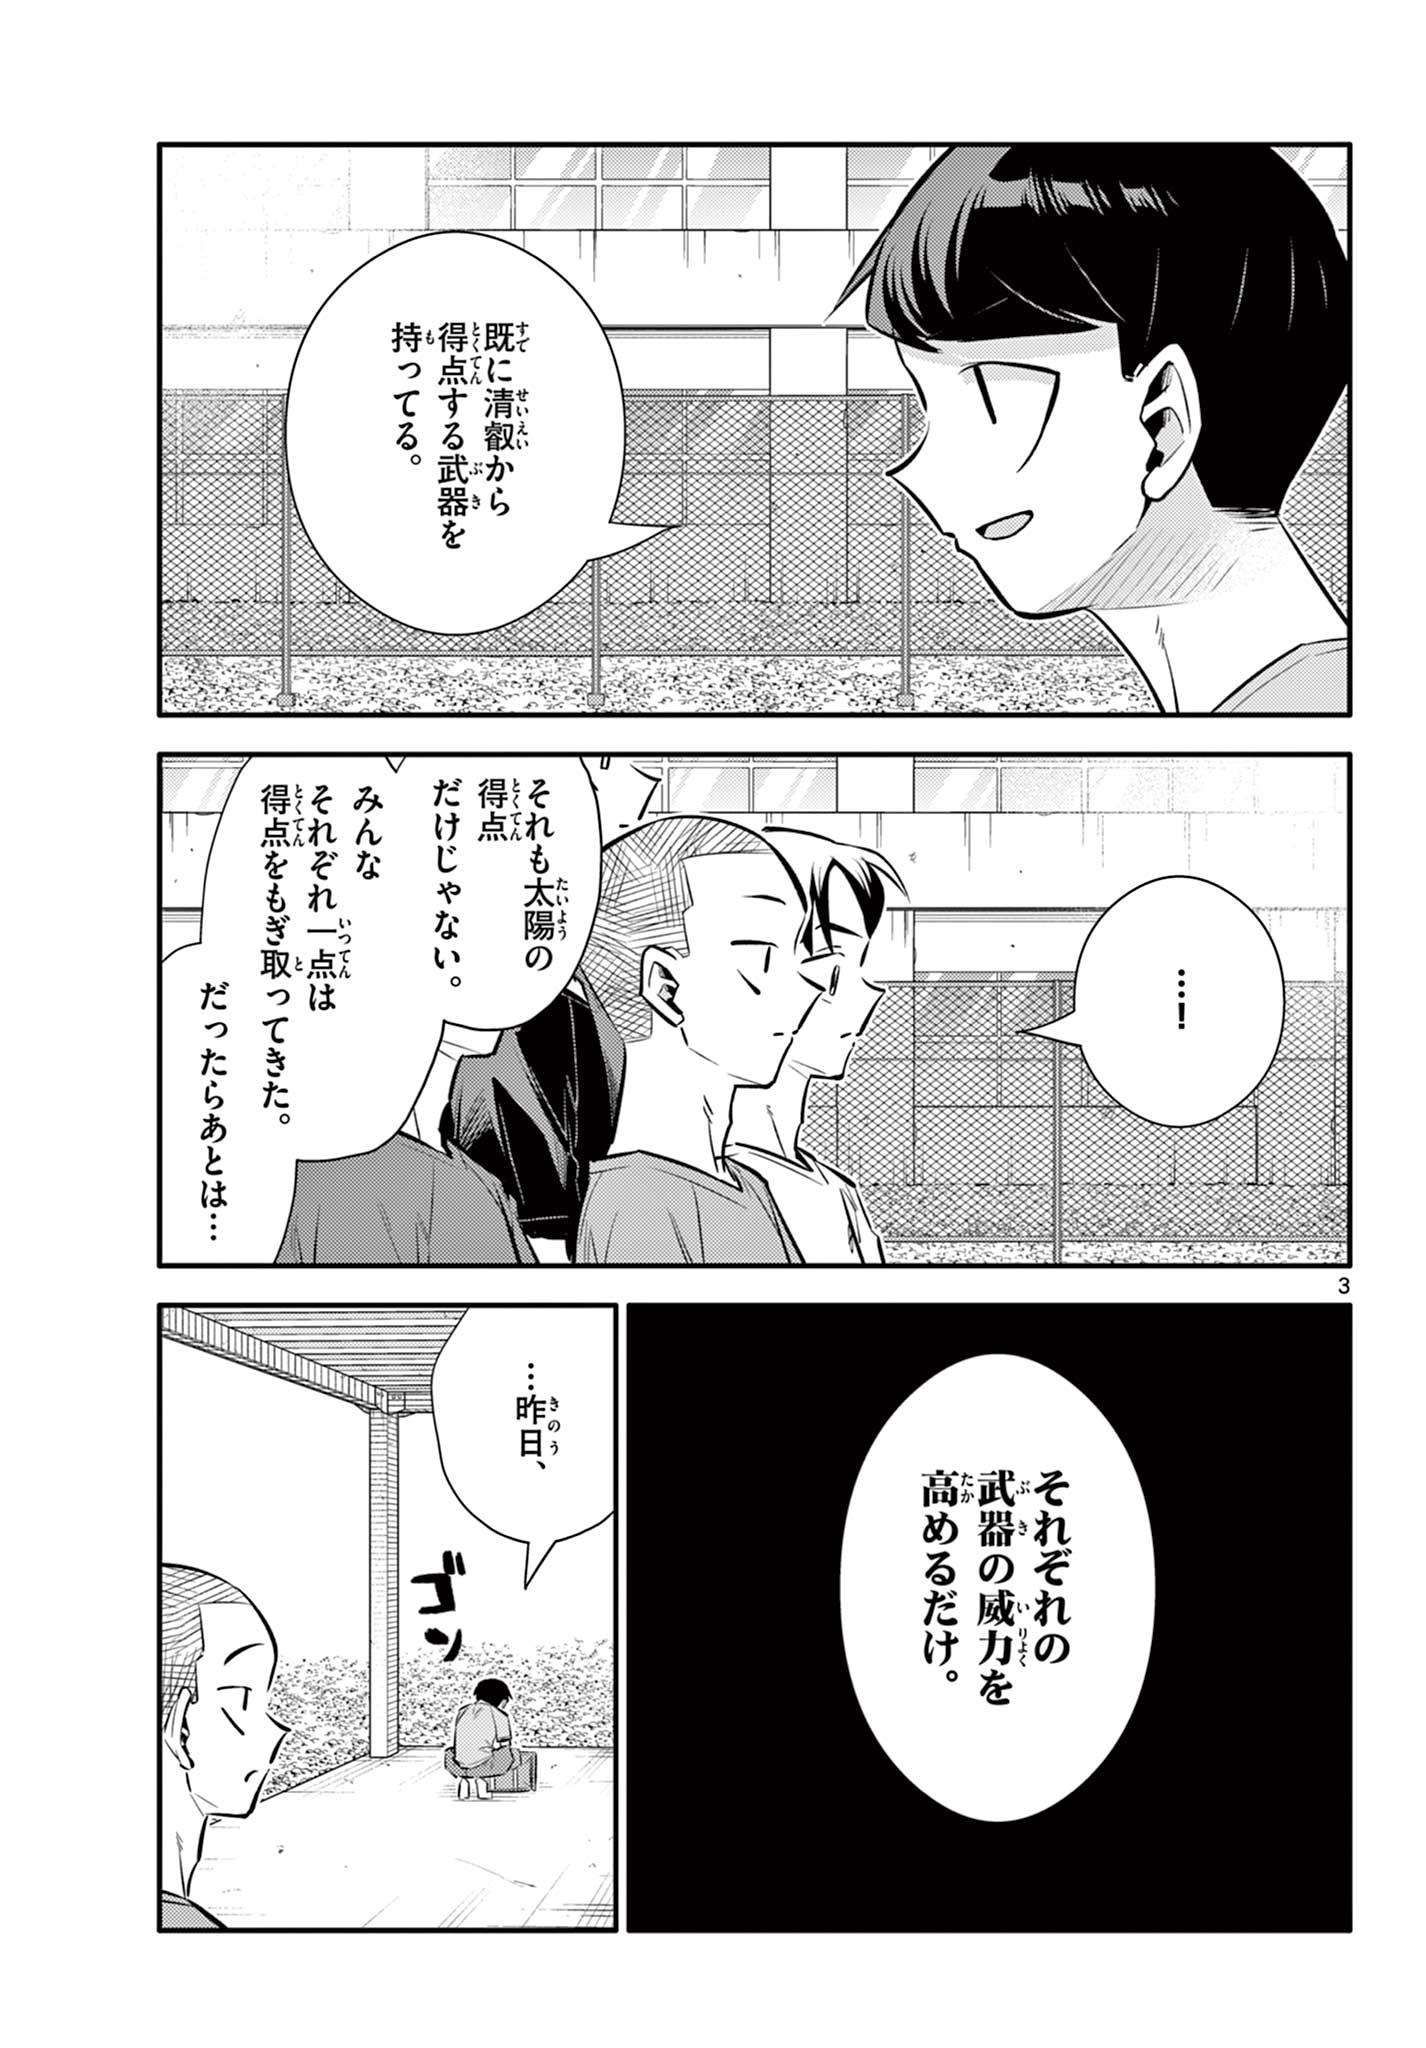 Chiisai Boku no Haru - Chapter 21 - Page 3